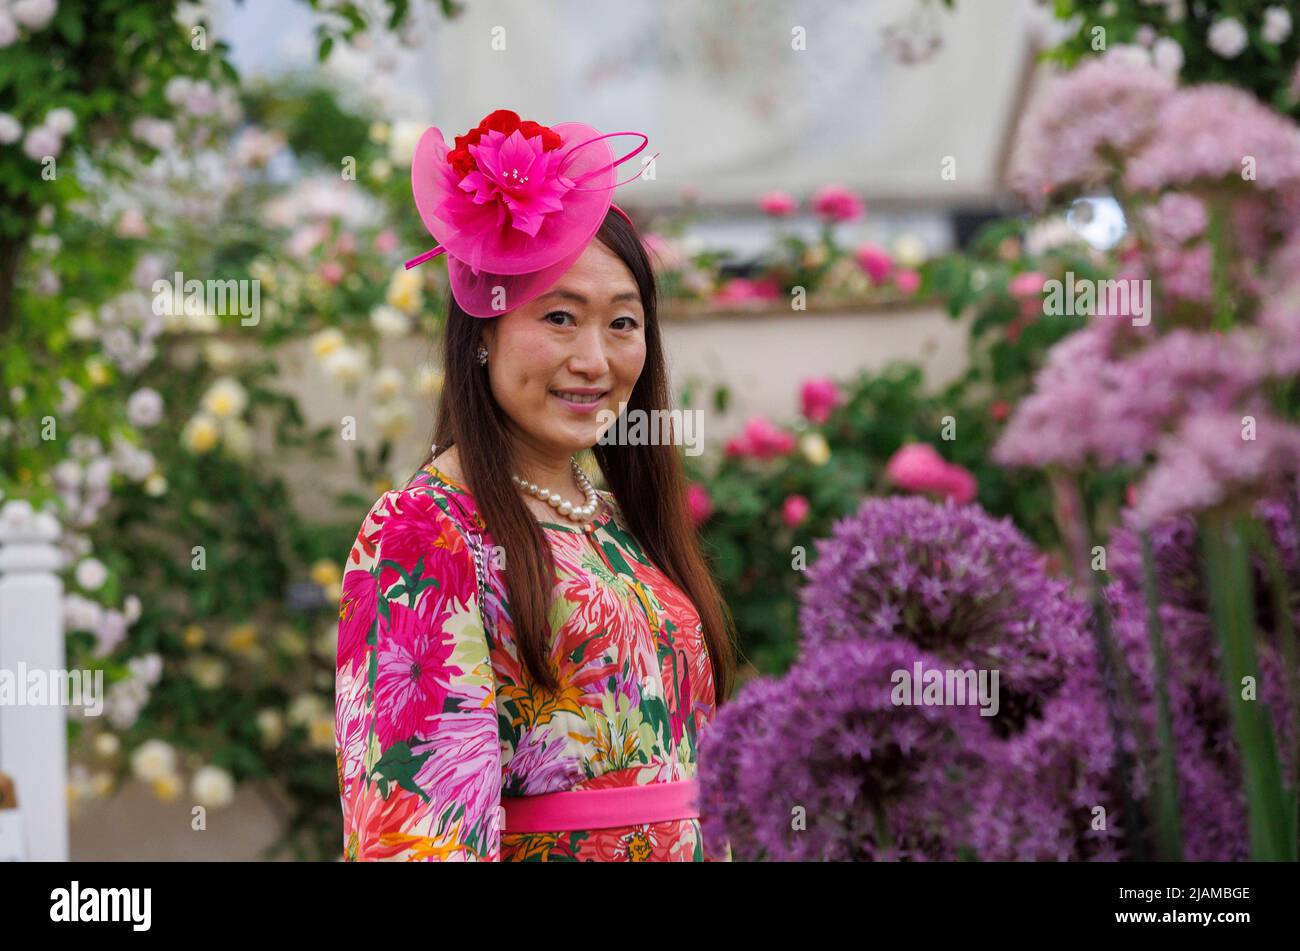 Una dama de moda con un sombrero rosa visita el RHS Chelsea Flower Show, entre los Aliums y las rosas. Foto de stock